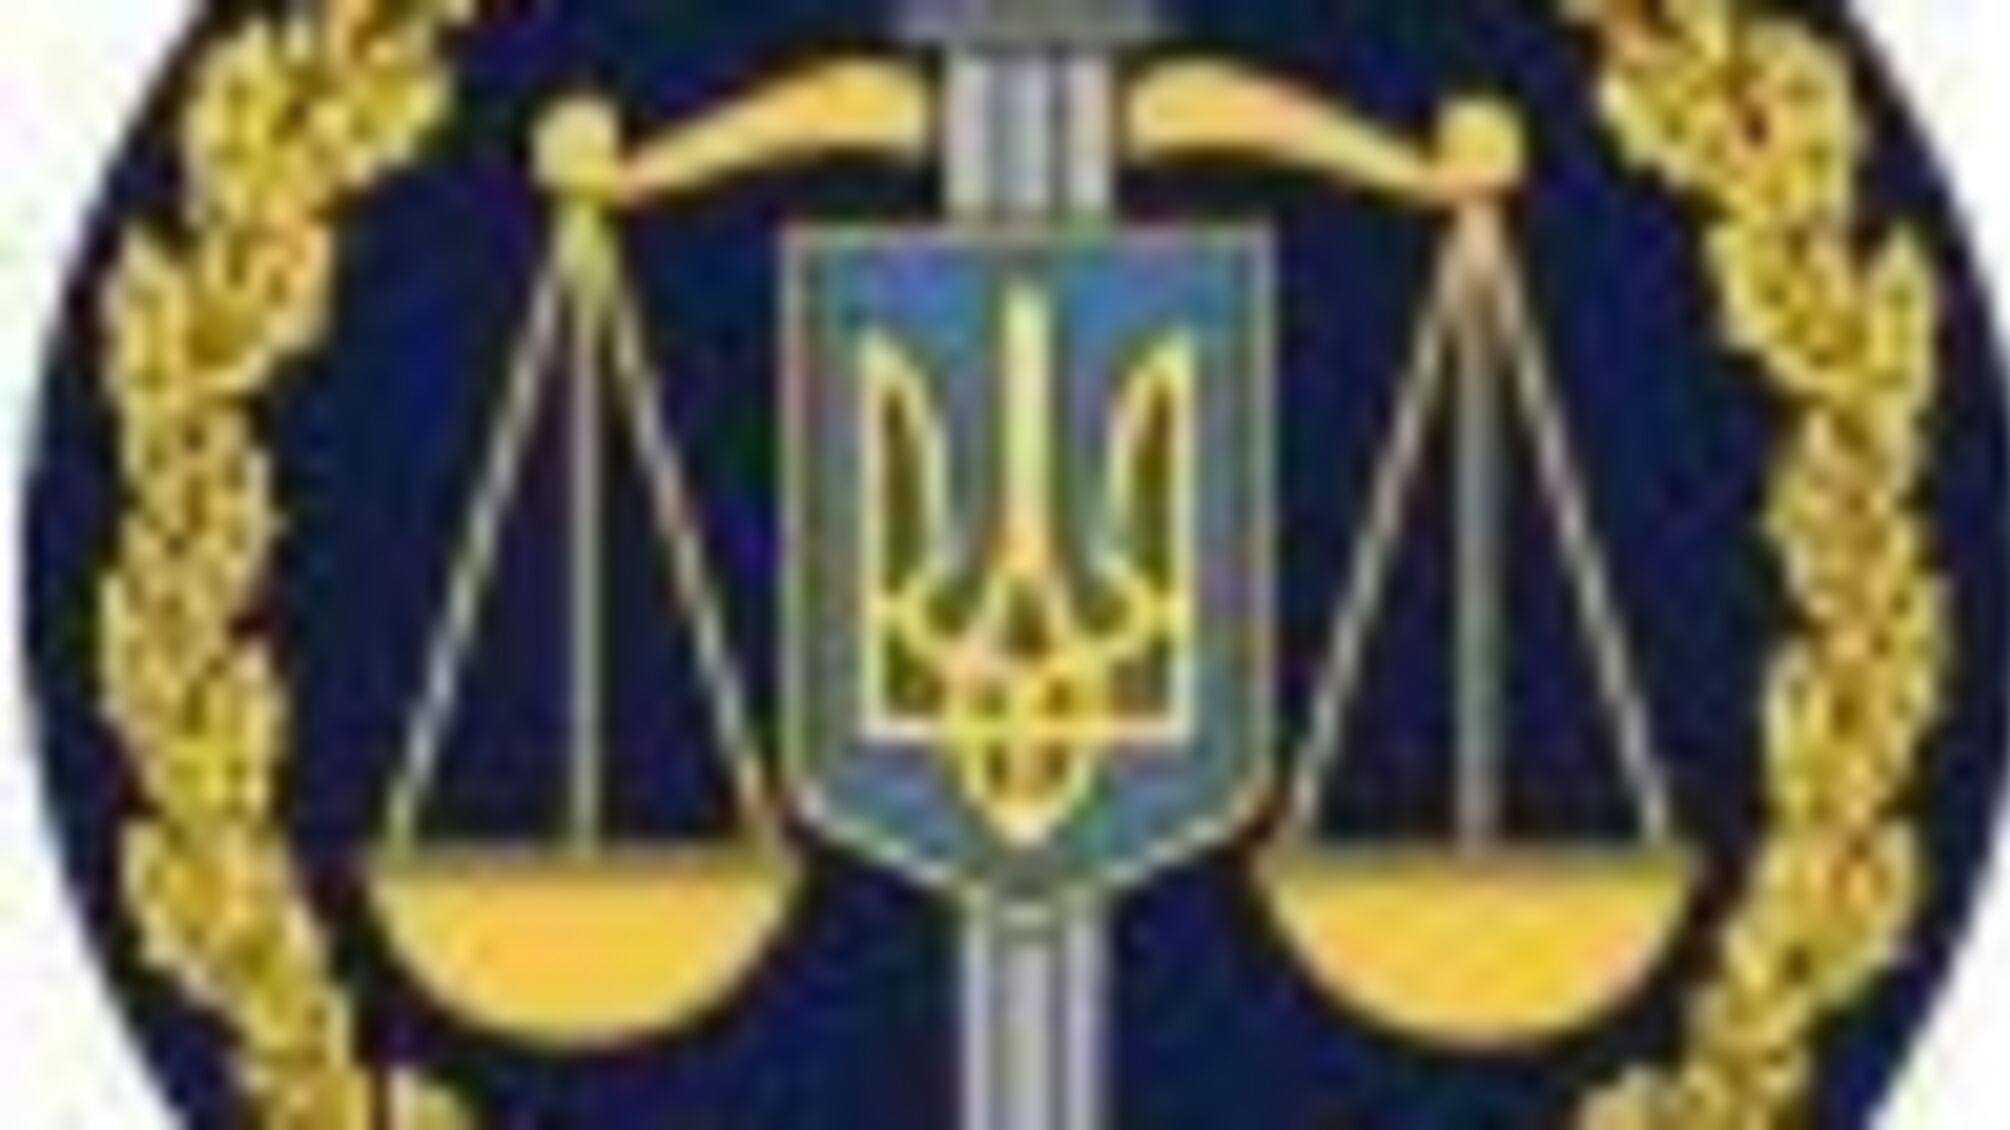 Незаконна реєстрація права власності на комунальне майно по вул. Чернишевській — повідомлено про підозру нотаріусу (ФОТО)